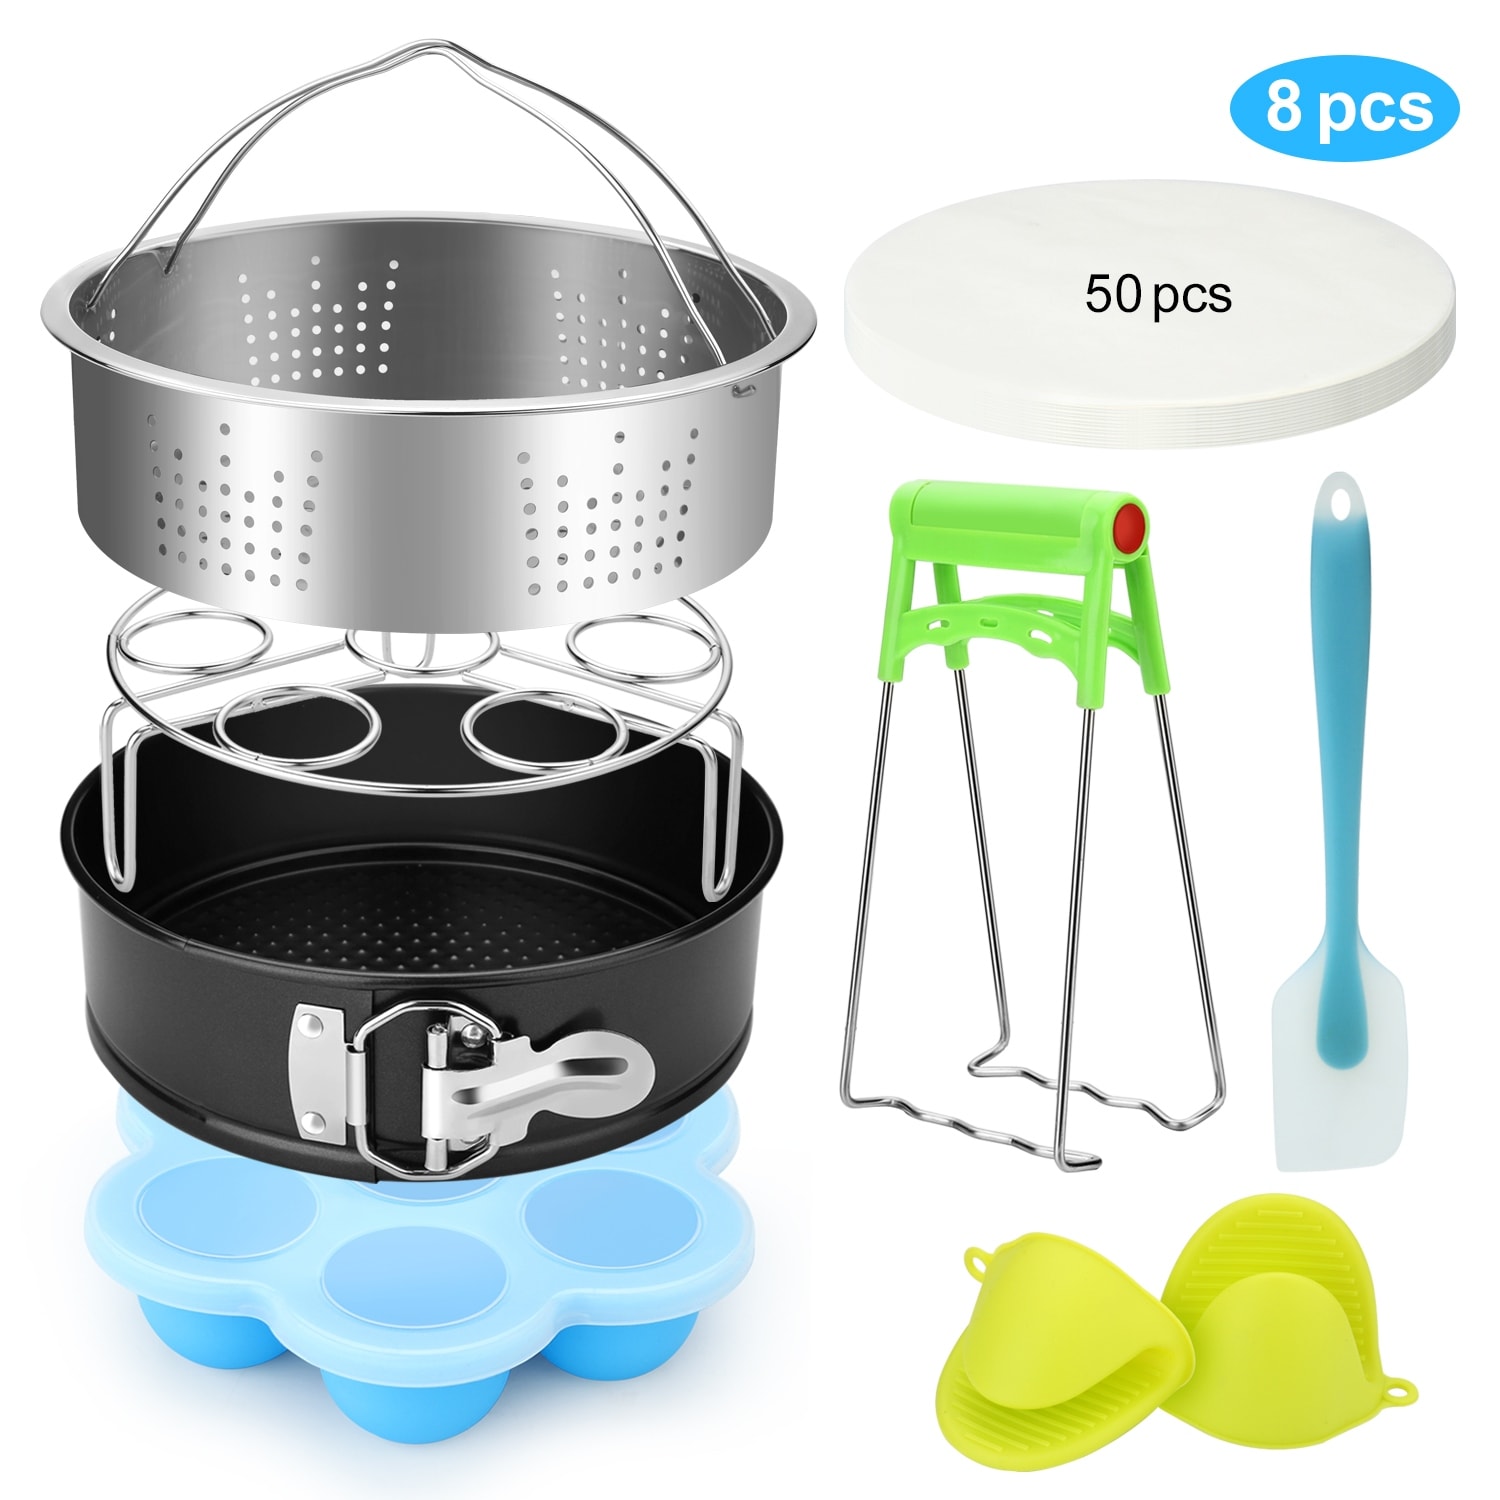 https://ak1.ostkcdn.com/images/products/is/images/direct/f60357ededede42277059ba6798f557277904827/FITNATE-8-Pack-Cooking-Instant-Pot-Accessories-Set-Steamer-Basket-Egg-Steamer-Rack.jpg